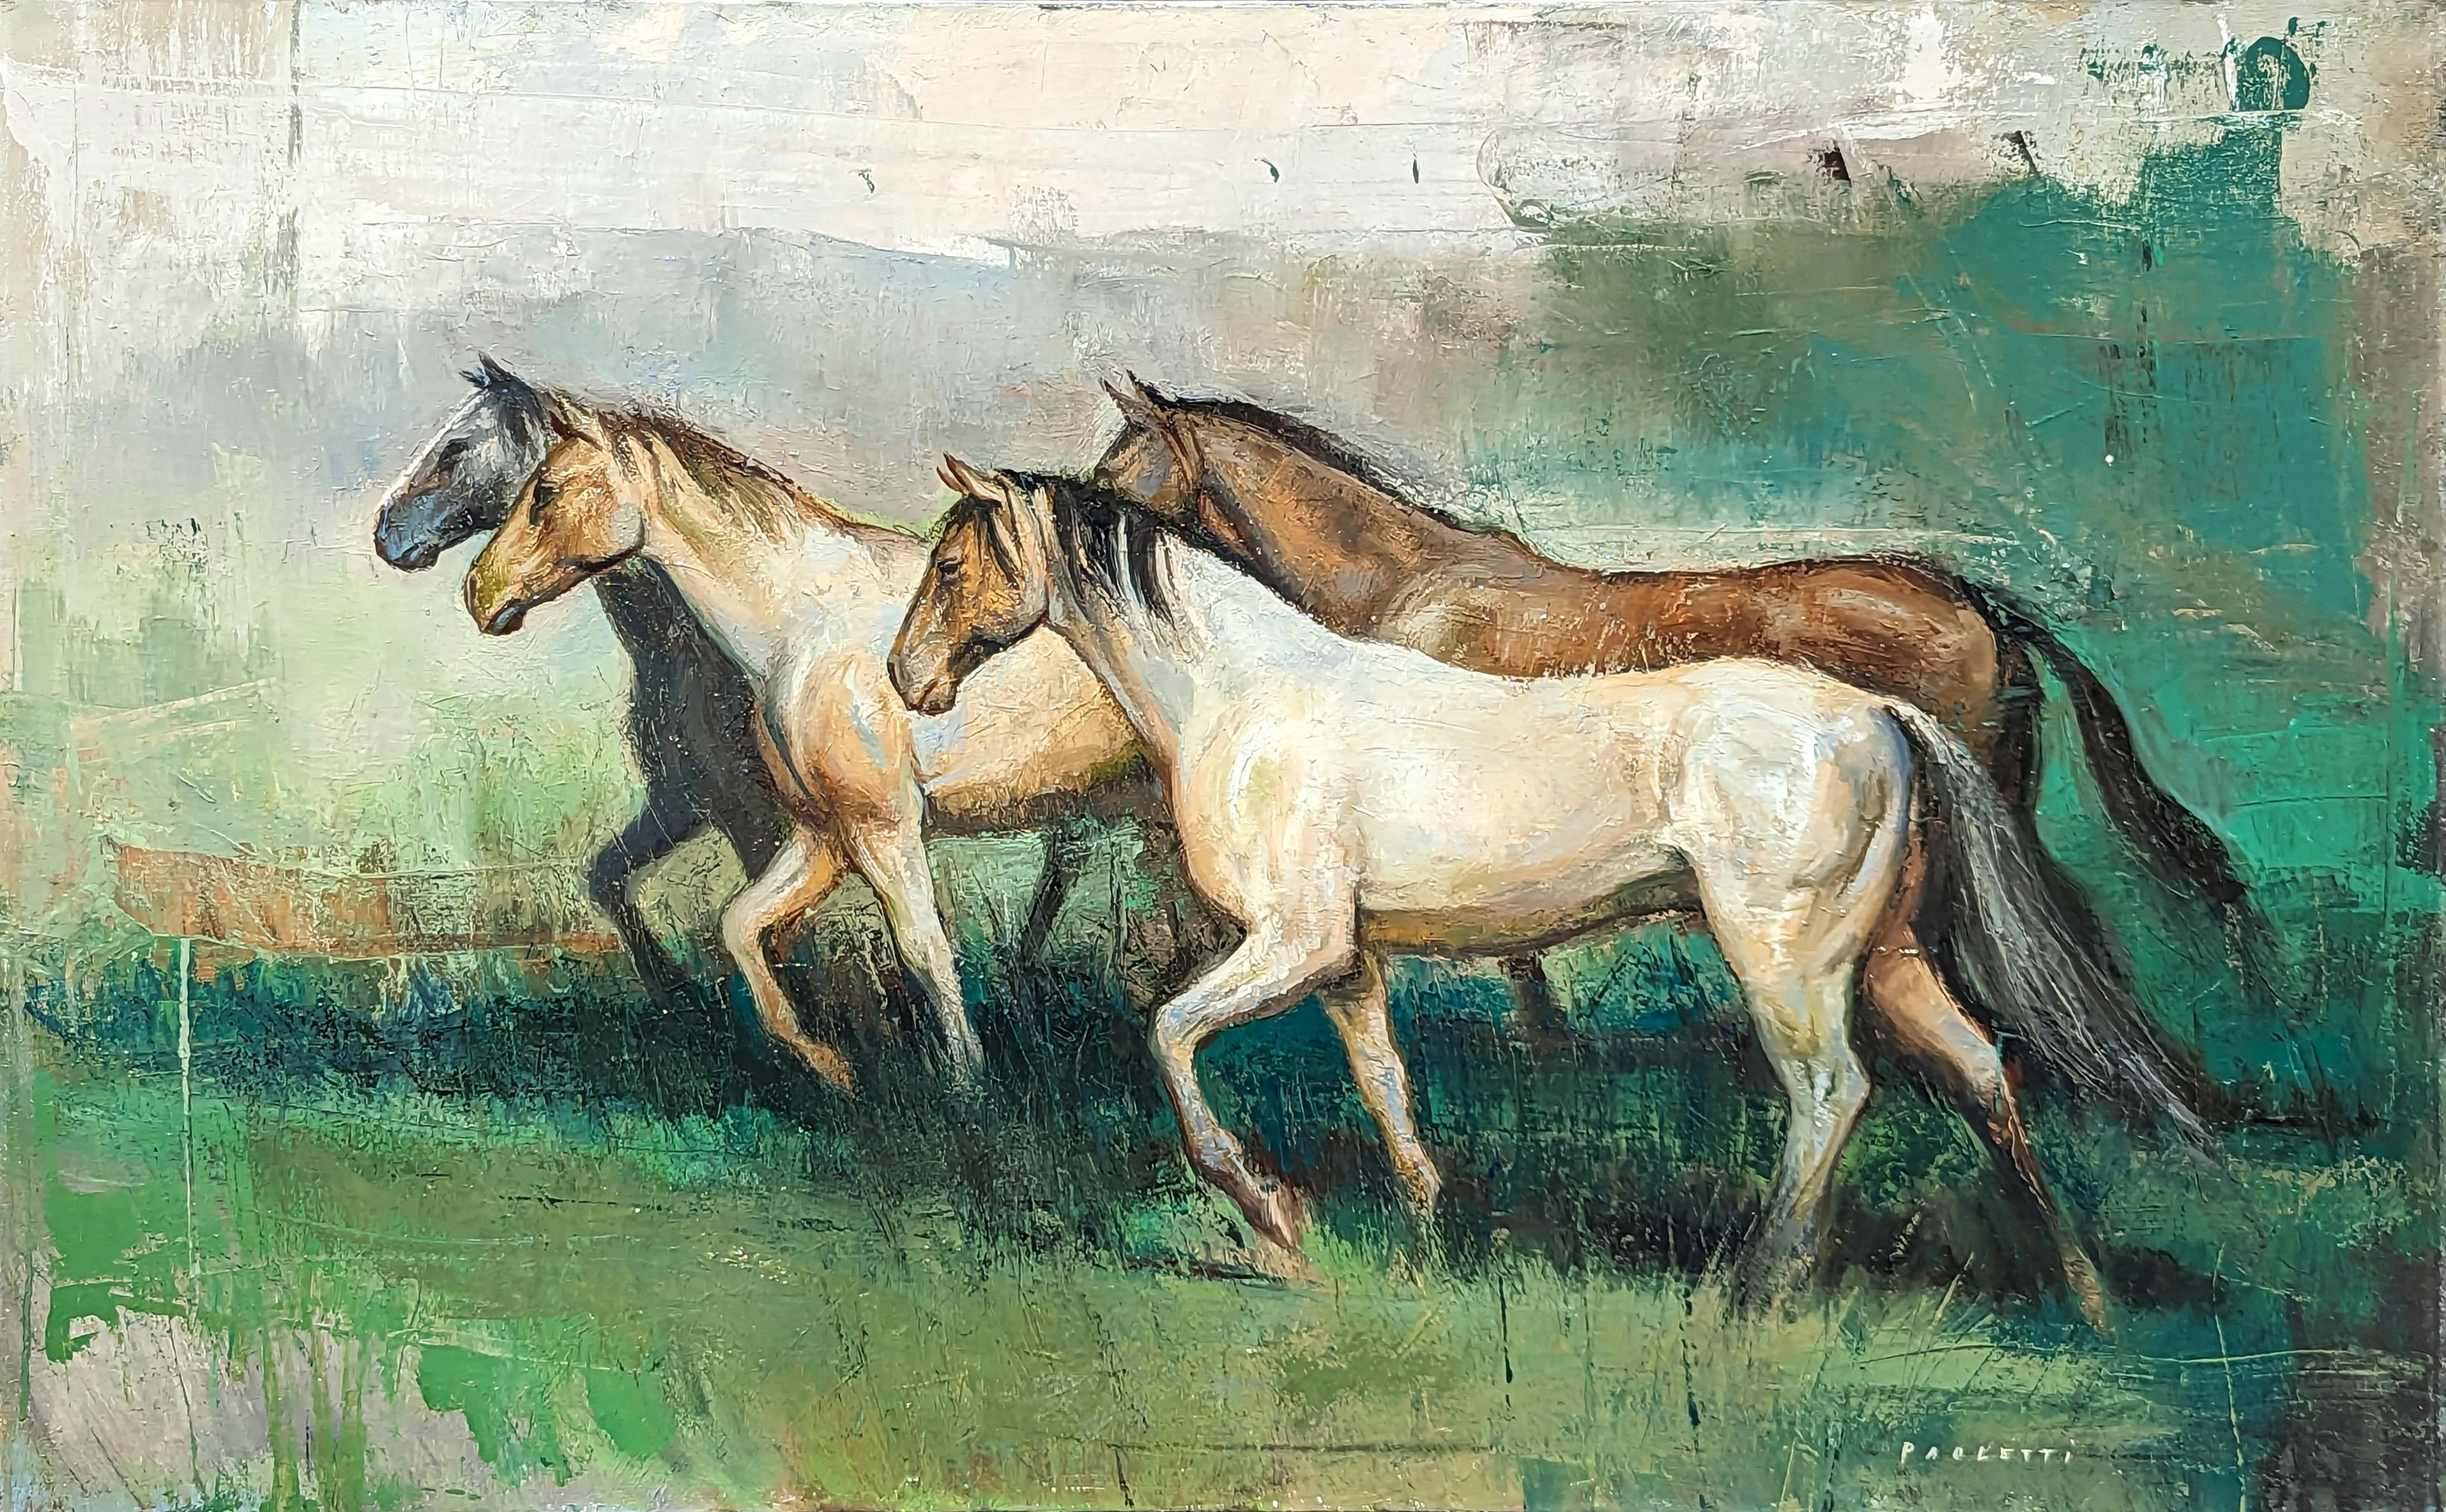 "Four Horses" Peinture équestre naturaliste contemporaine de chevaux 